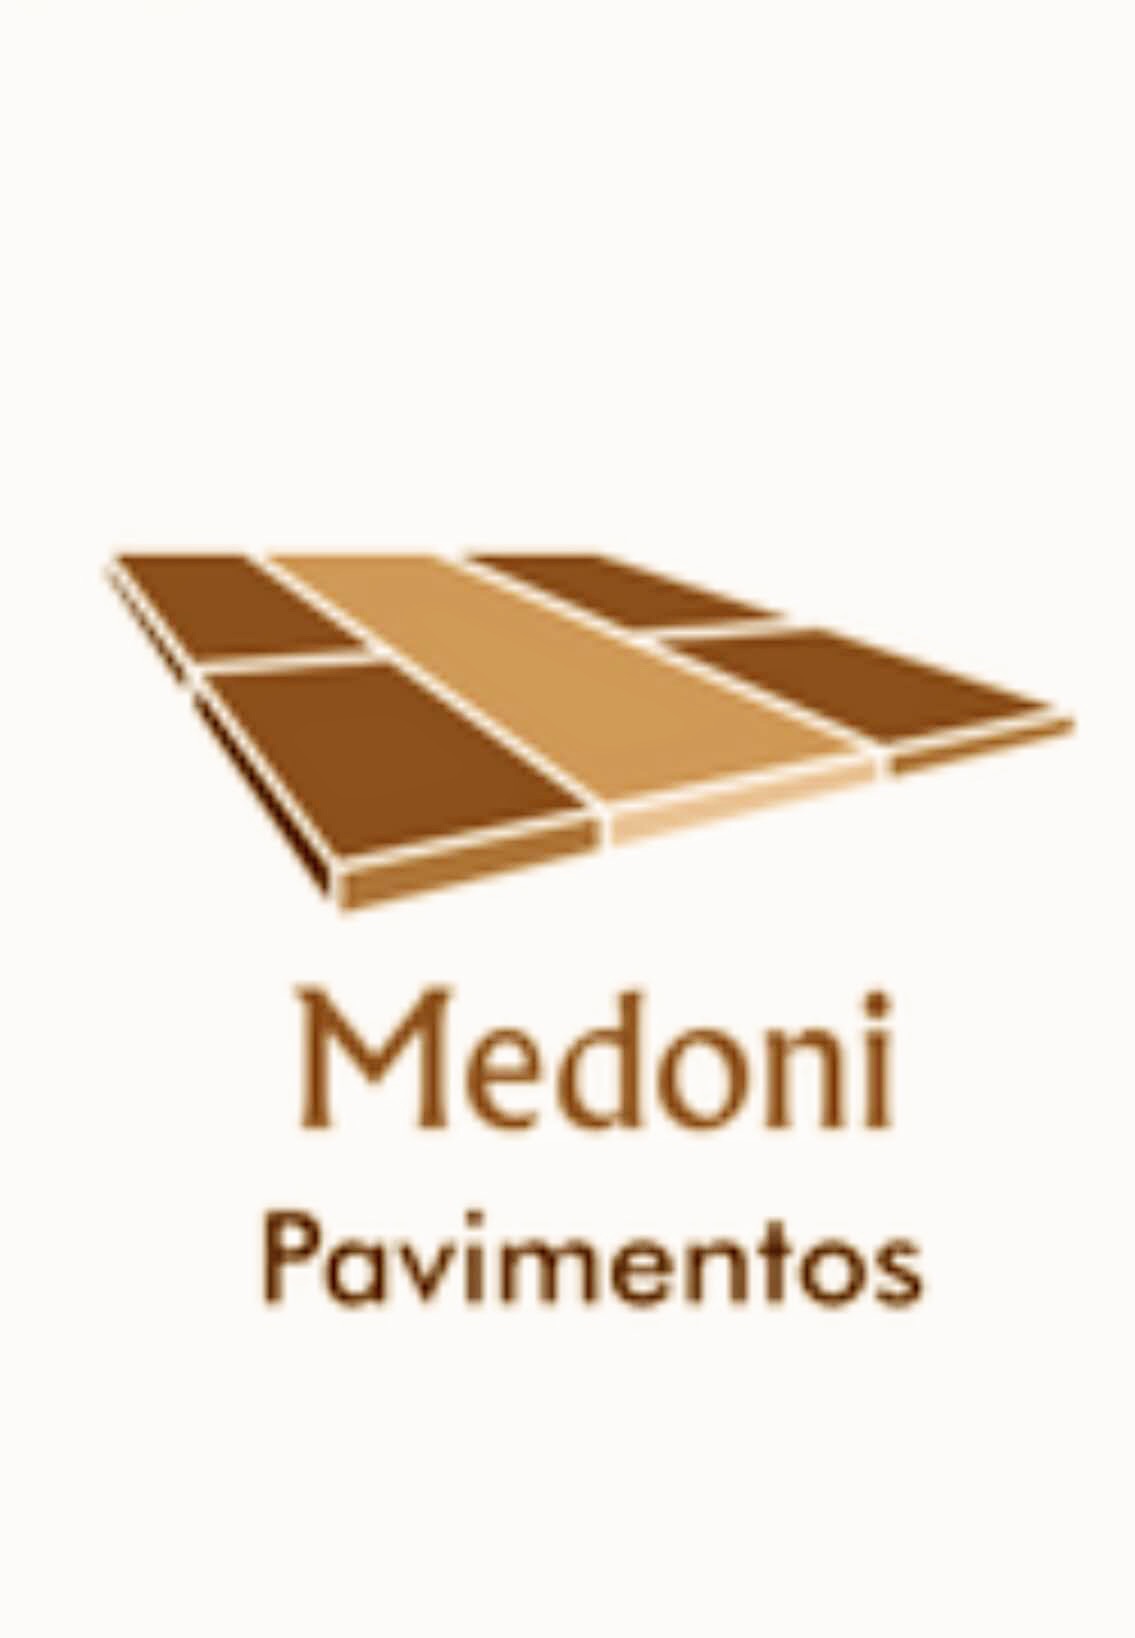 Medoni construção - Sintra - Instalação de Pavimento em Pedra ou Ladrilho